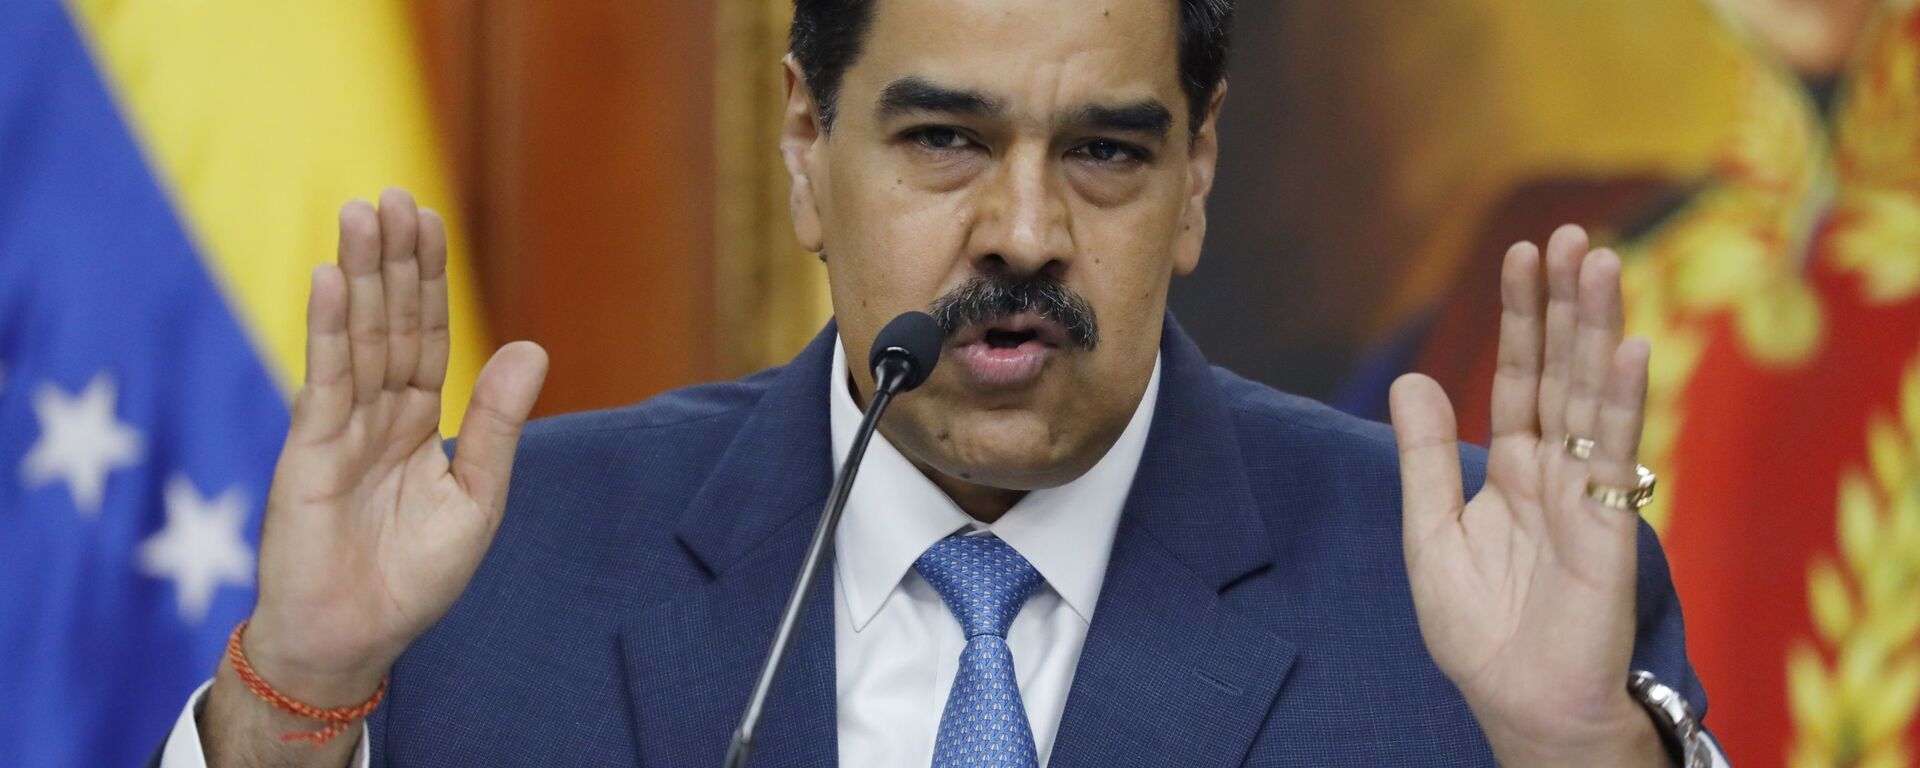 Nicolás Maduro, el presidente de Venezuela - Sputnik Mundo, 1920, 22.09.2021